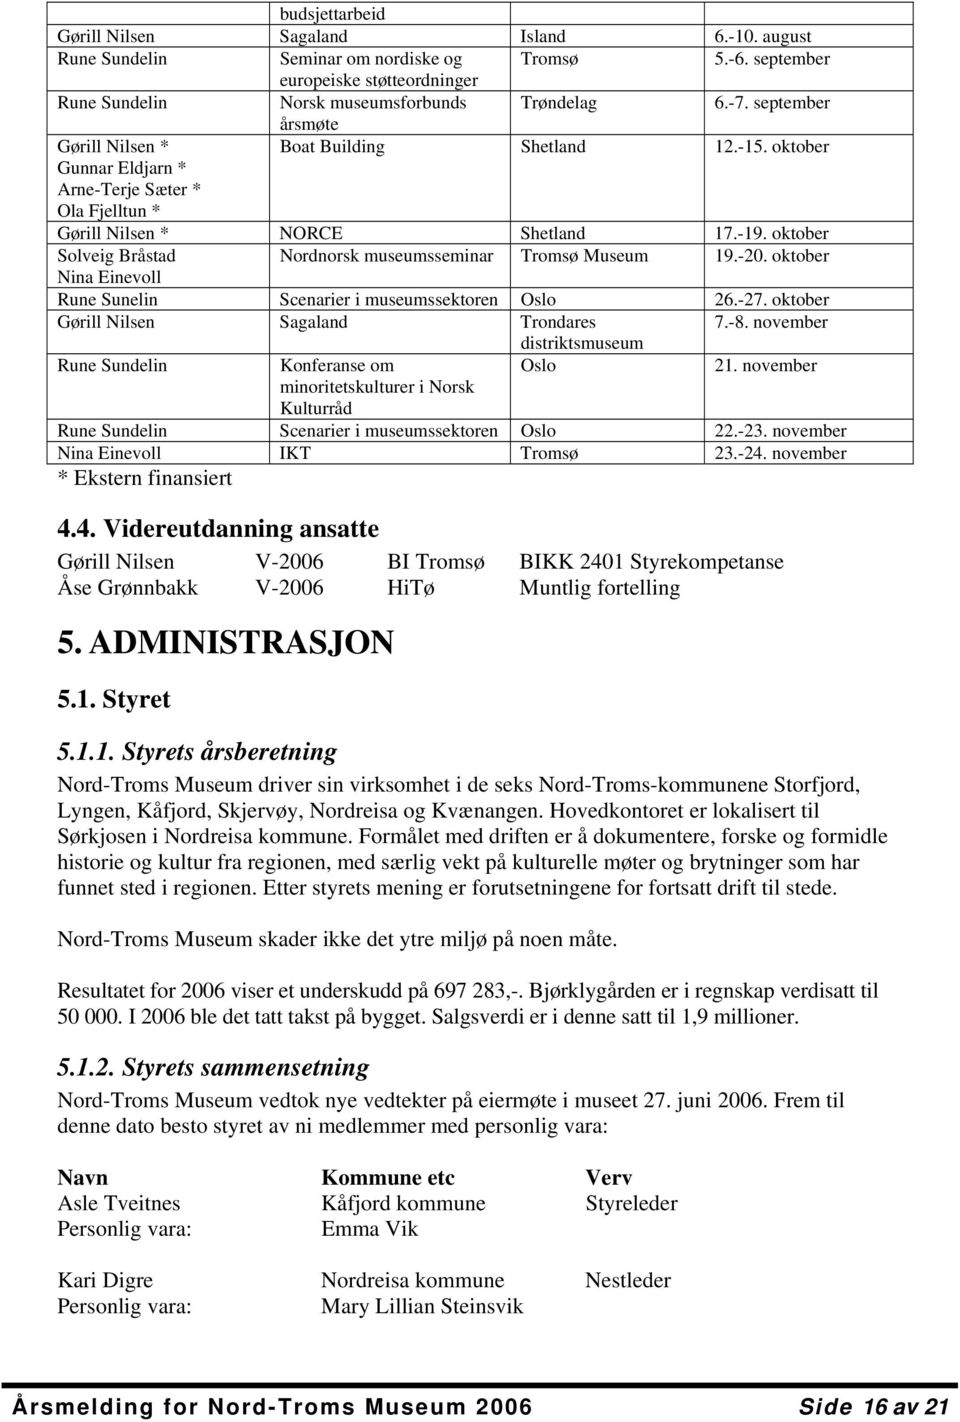 oktober Solveig Bråstad Nordnorsk museumsseminar Tromsø Museum 19.-20. oktober Nina Einevoll Rune Sunelin Scenarier i museumssektoren Oslo 26.-27. oktober Gørill Nilsen Sagaland Trondares 7.-8.